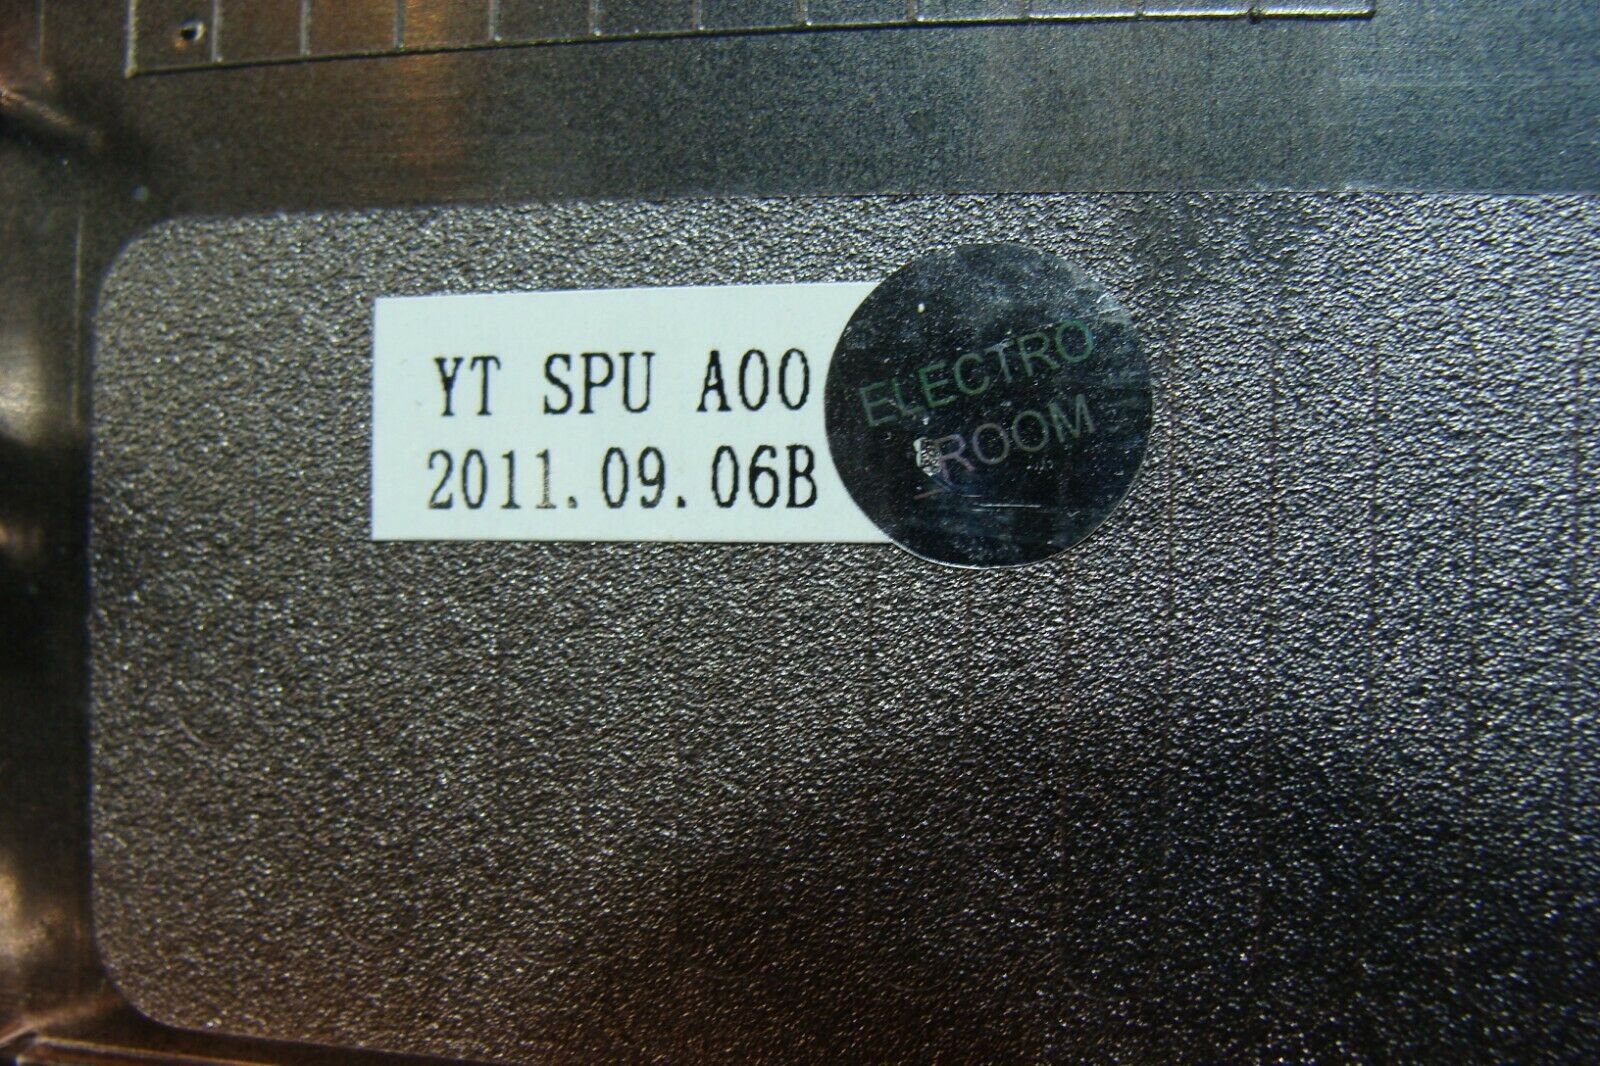 Samsung NP-RV510-A05US 15.6